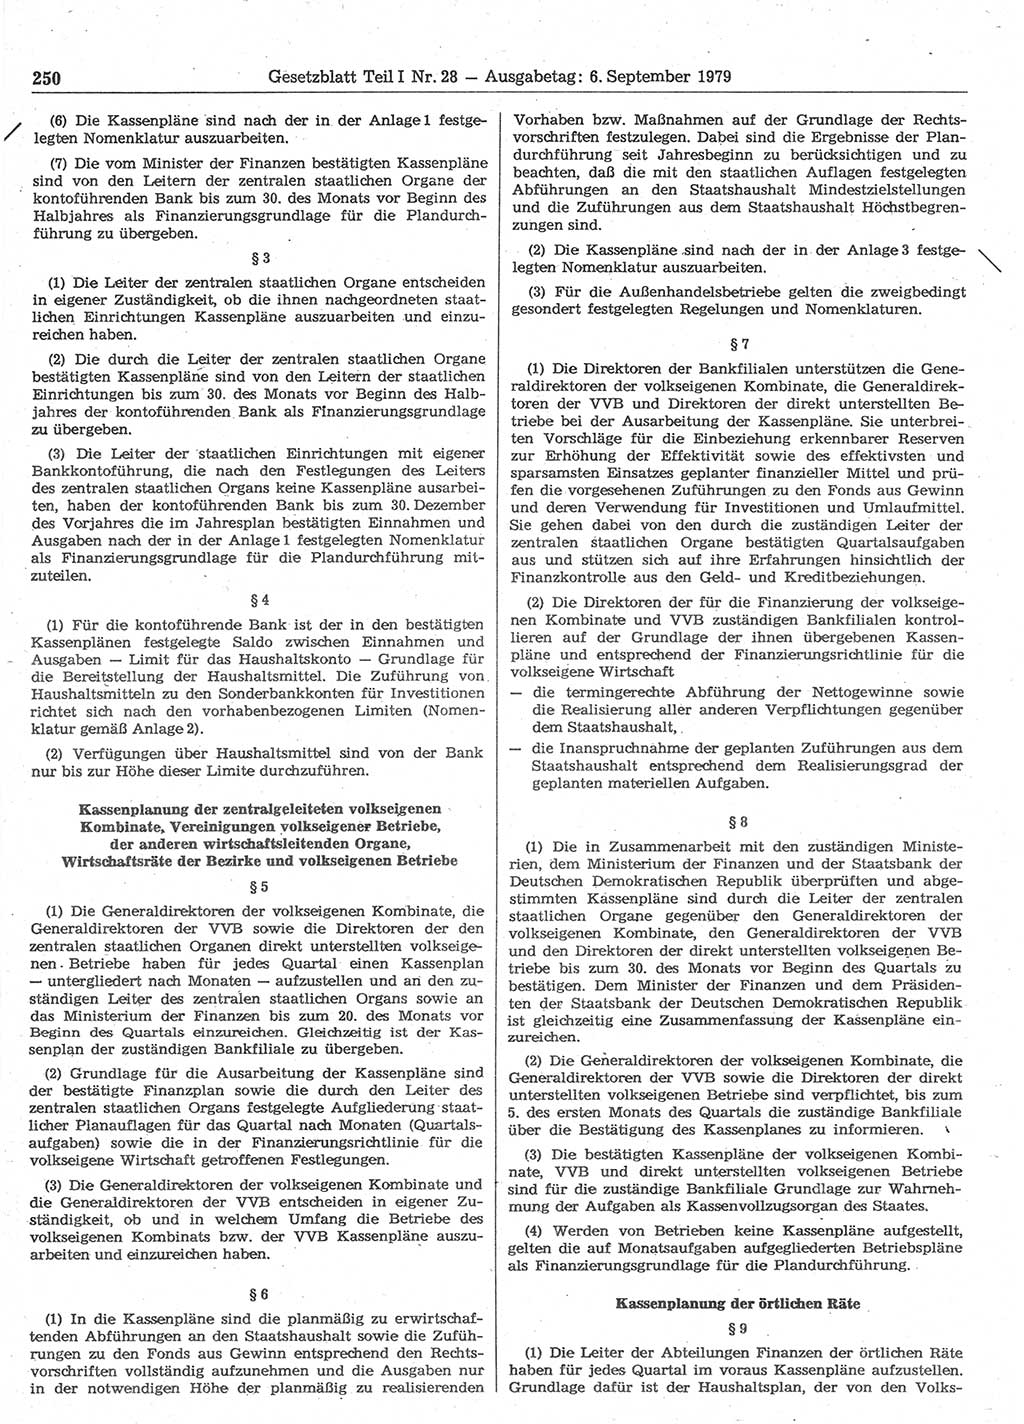 Gesetzblatt (GBl.) der Deutschen Demokratischen Republik (DDR) Teil Ⅰ 1979, Seite 250 (GBl. DDR Ⅰ 1979, S. 250)